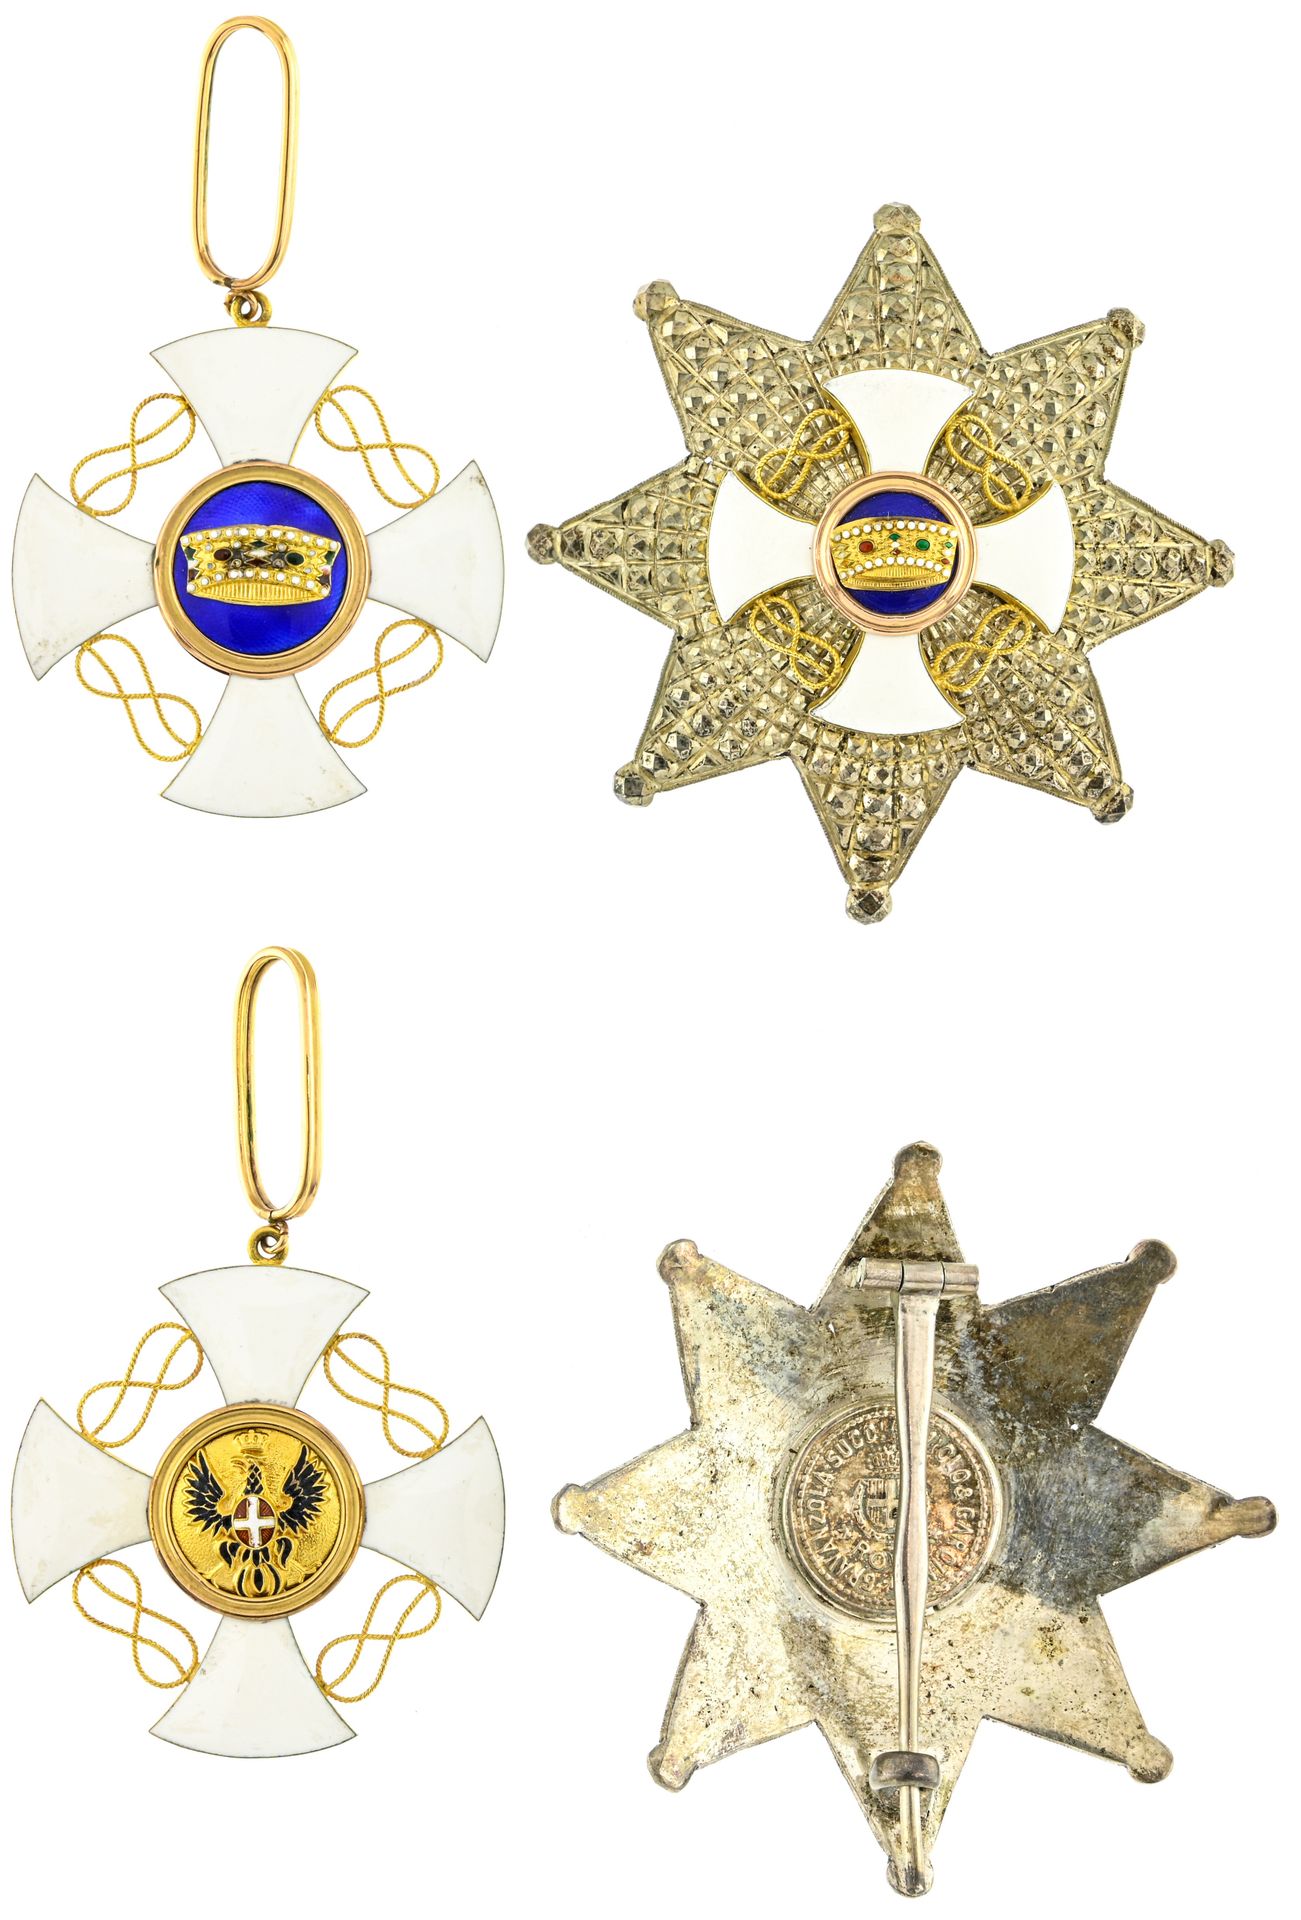 ITALIE, ITALIA,

Ordine della Corona d'Italia,



Croce di Comandante, oro e sma&hellip;